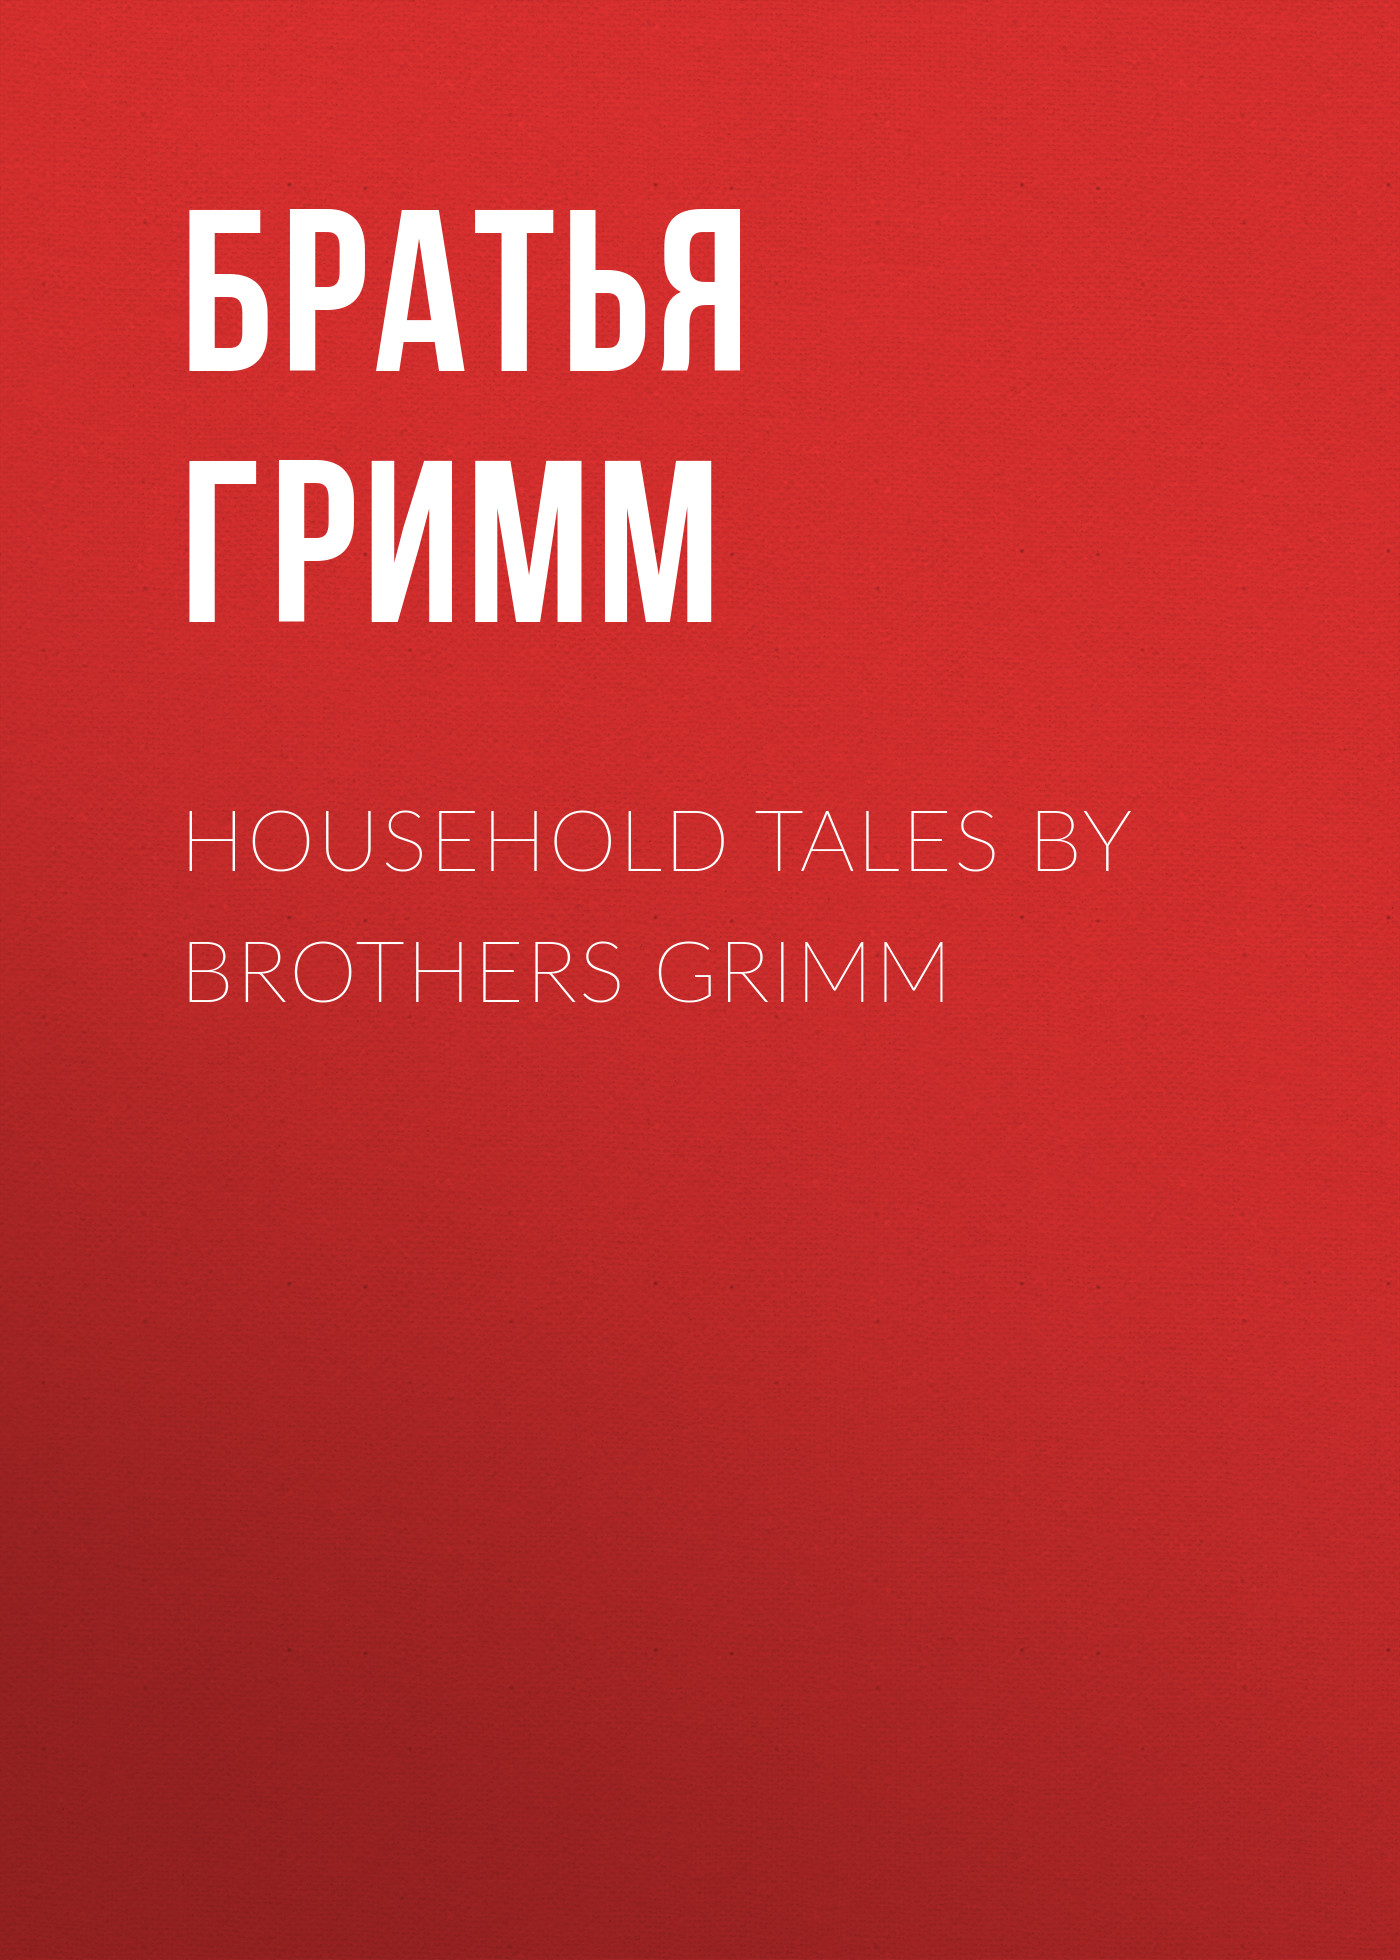 Книга Household Tales by Brothers Grimm из серии , созданная Якоб и Вильгельм Гримм, может относится к жанру Литература 19 века, Зарубежная старинная литература, Зарубежная классика, Сказки. Стоимость электронной книги Household Tales by Brothers Grimm с идентификатором 25201727 составляет 0 руб.